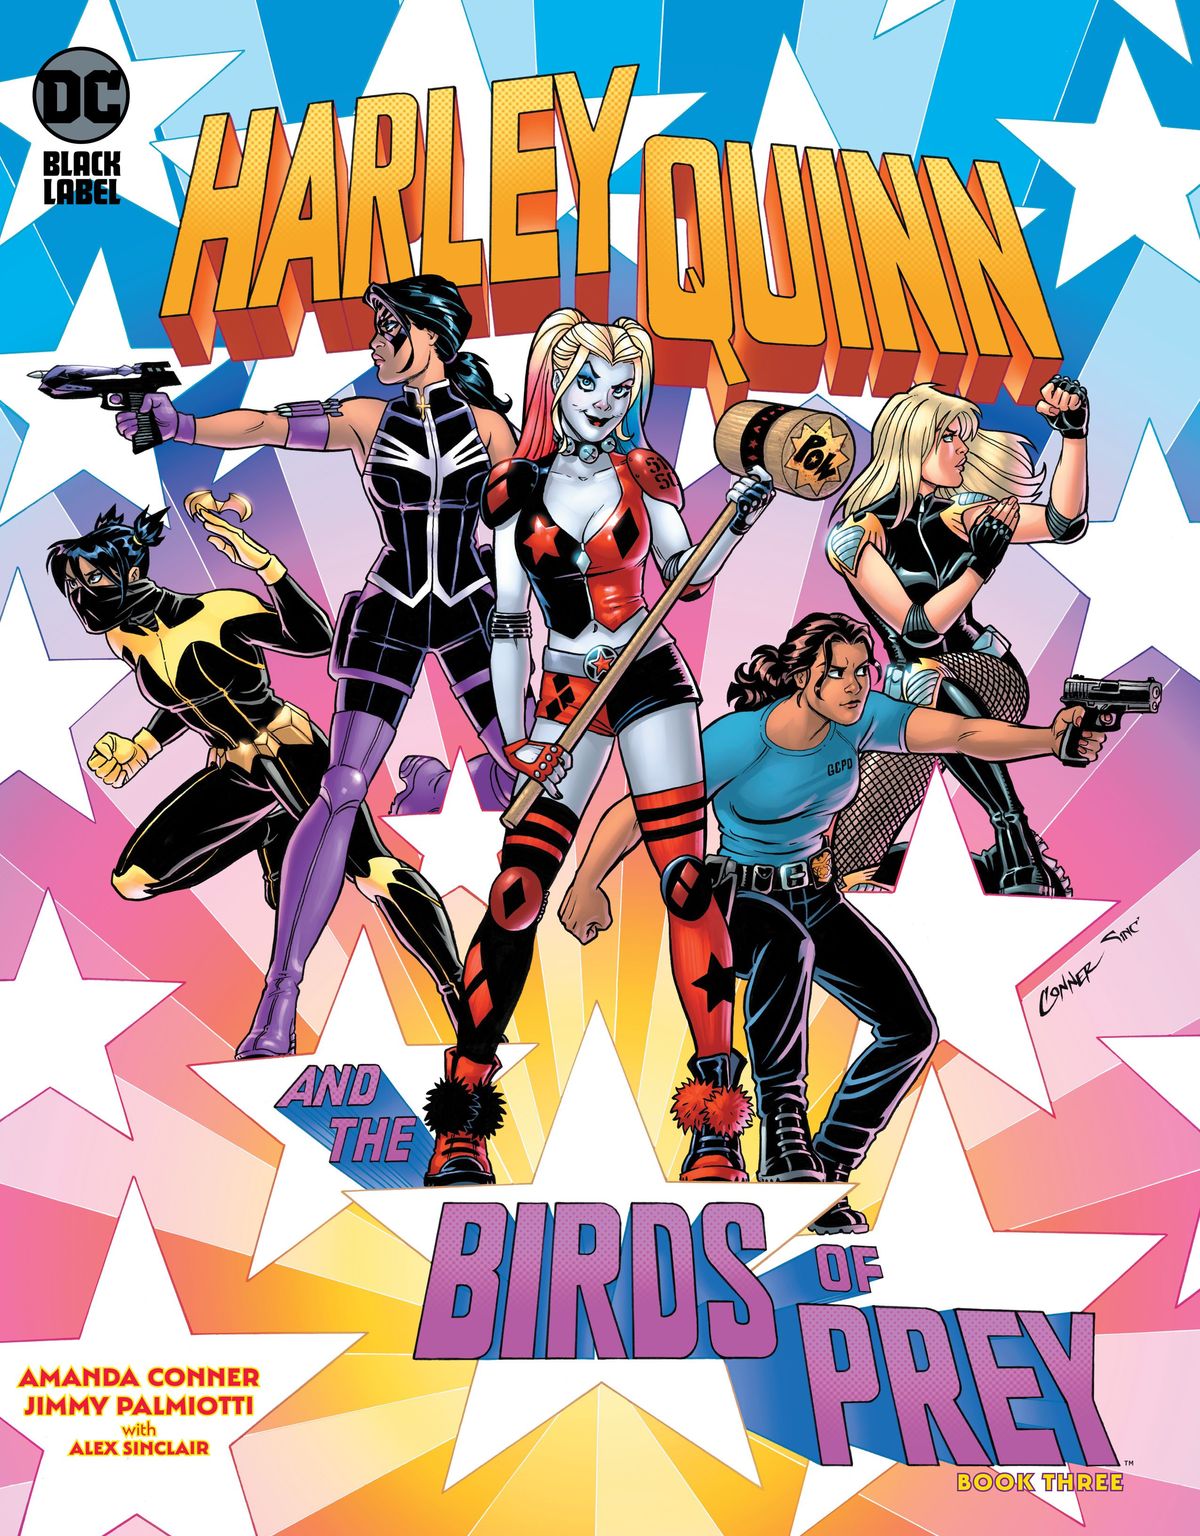 FÖRSIKT: Harley Quinn och rovfåglarna # 3